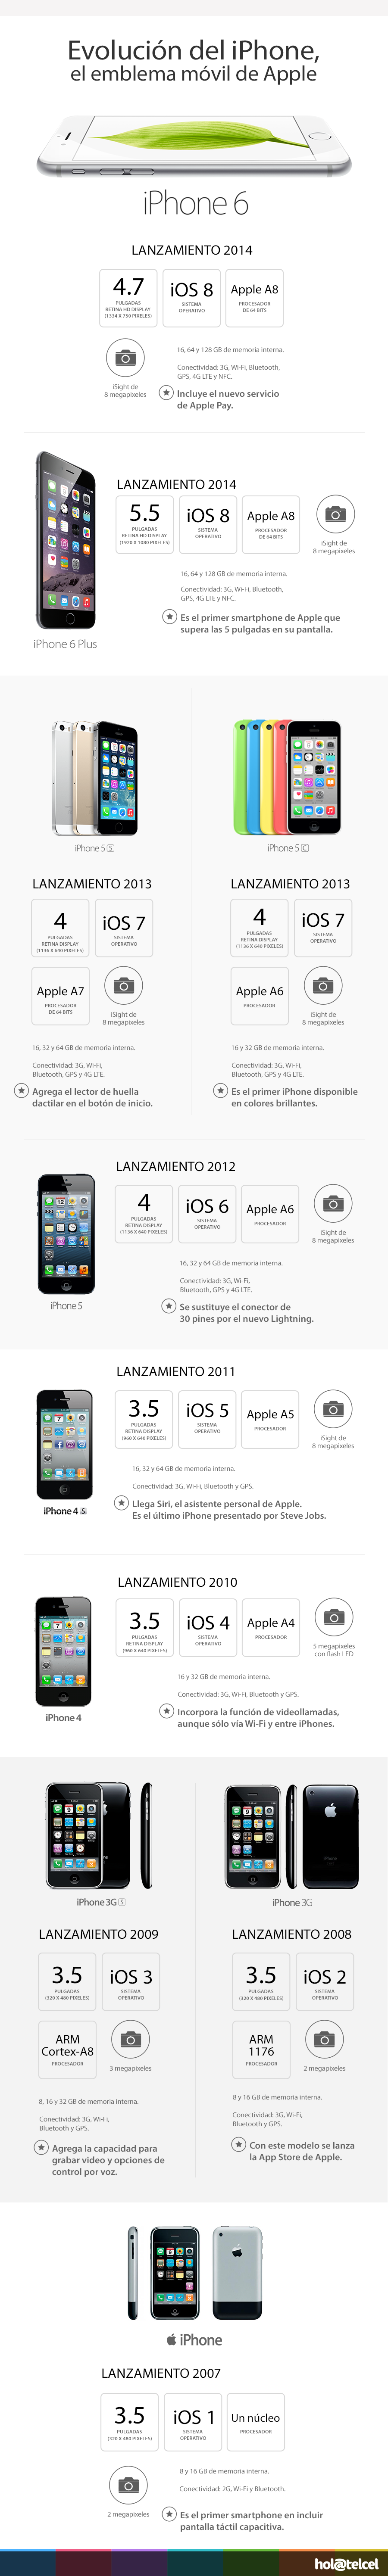 Infografía de la evolución del iPhone